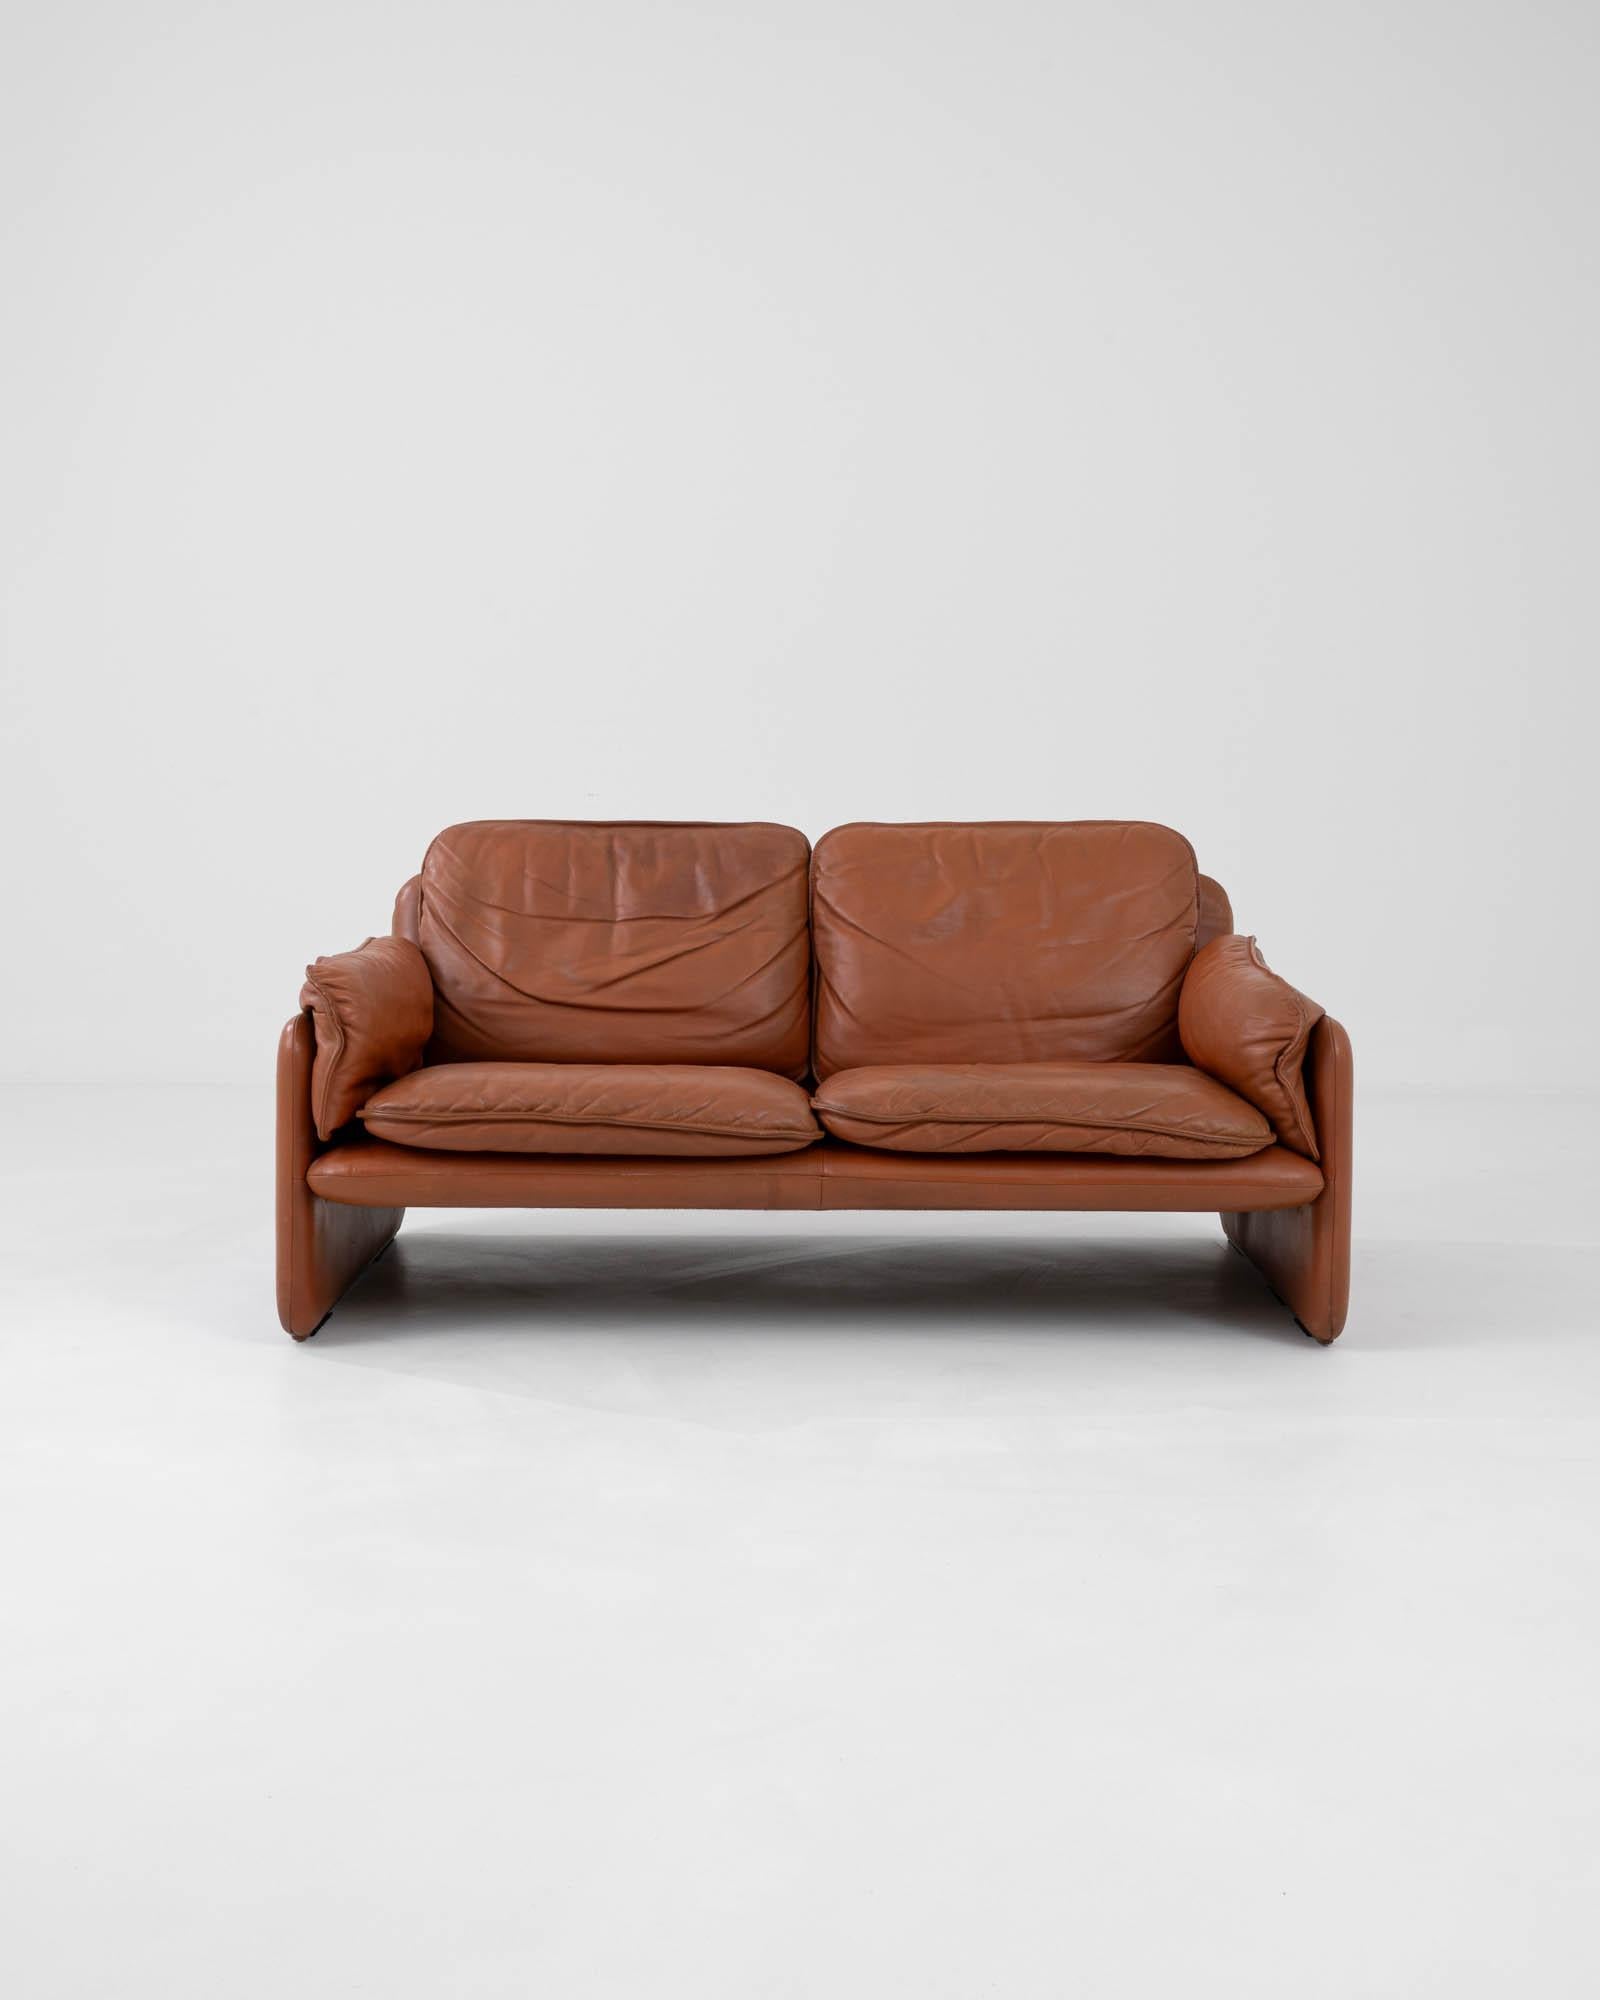 Fabriqué à la main en Suisse par le célèbre fabricant de meubles De Sede, ce canapé en cuir des années 1970 est à la fois sophistiqué et ludique. Les plis souples des coussins et des accoudoirs donnent une inflexion décontractée à la silhouette